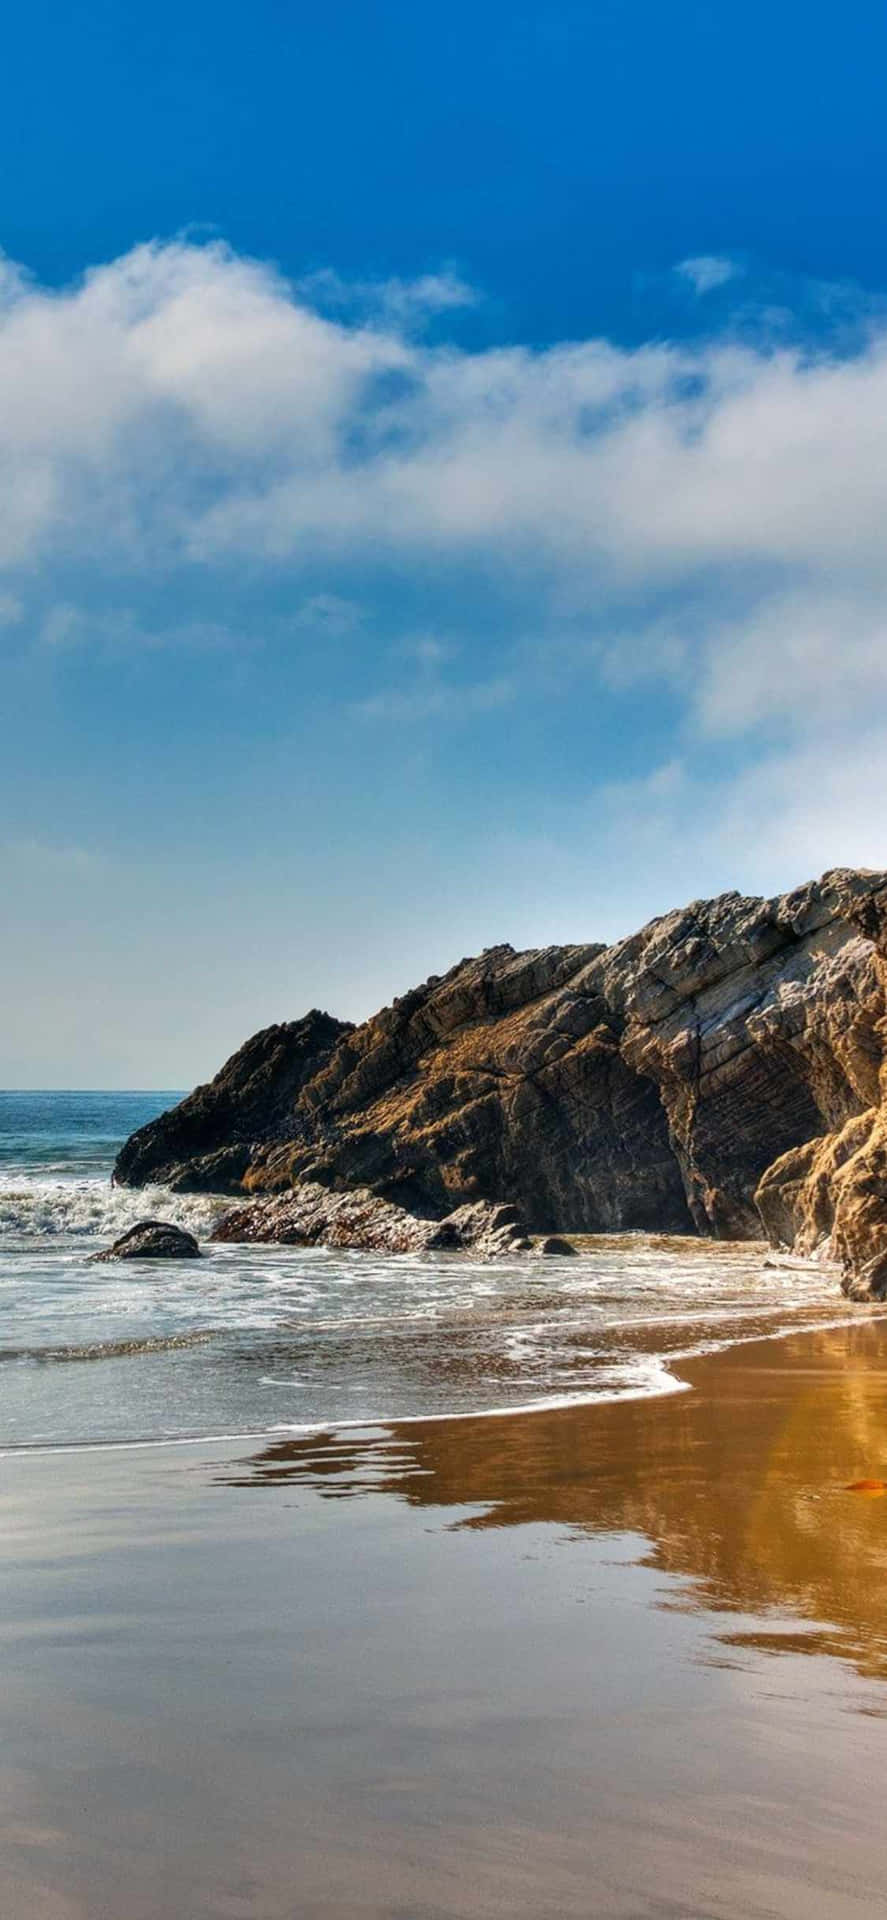 Genießensie Eine Wunderschöne Meeresansicht Mit Ihrem Iphone Xs Malibu.